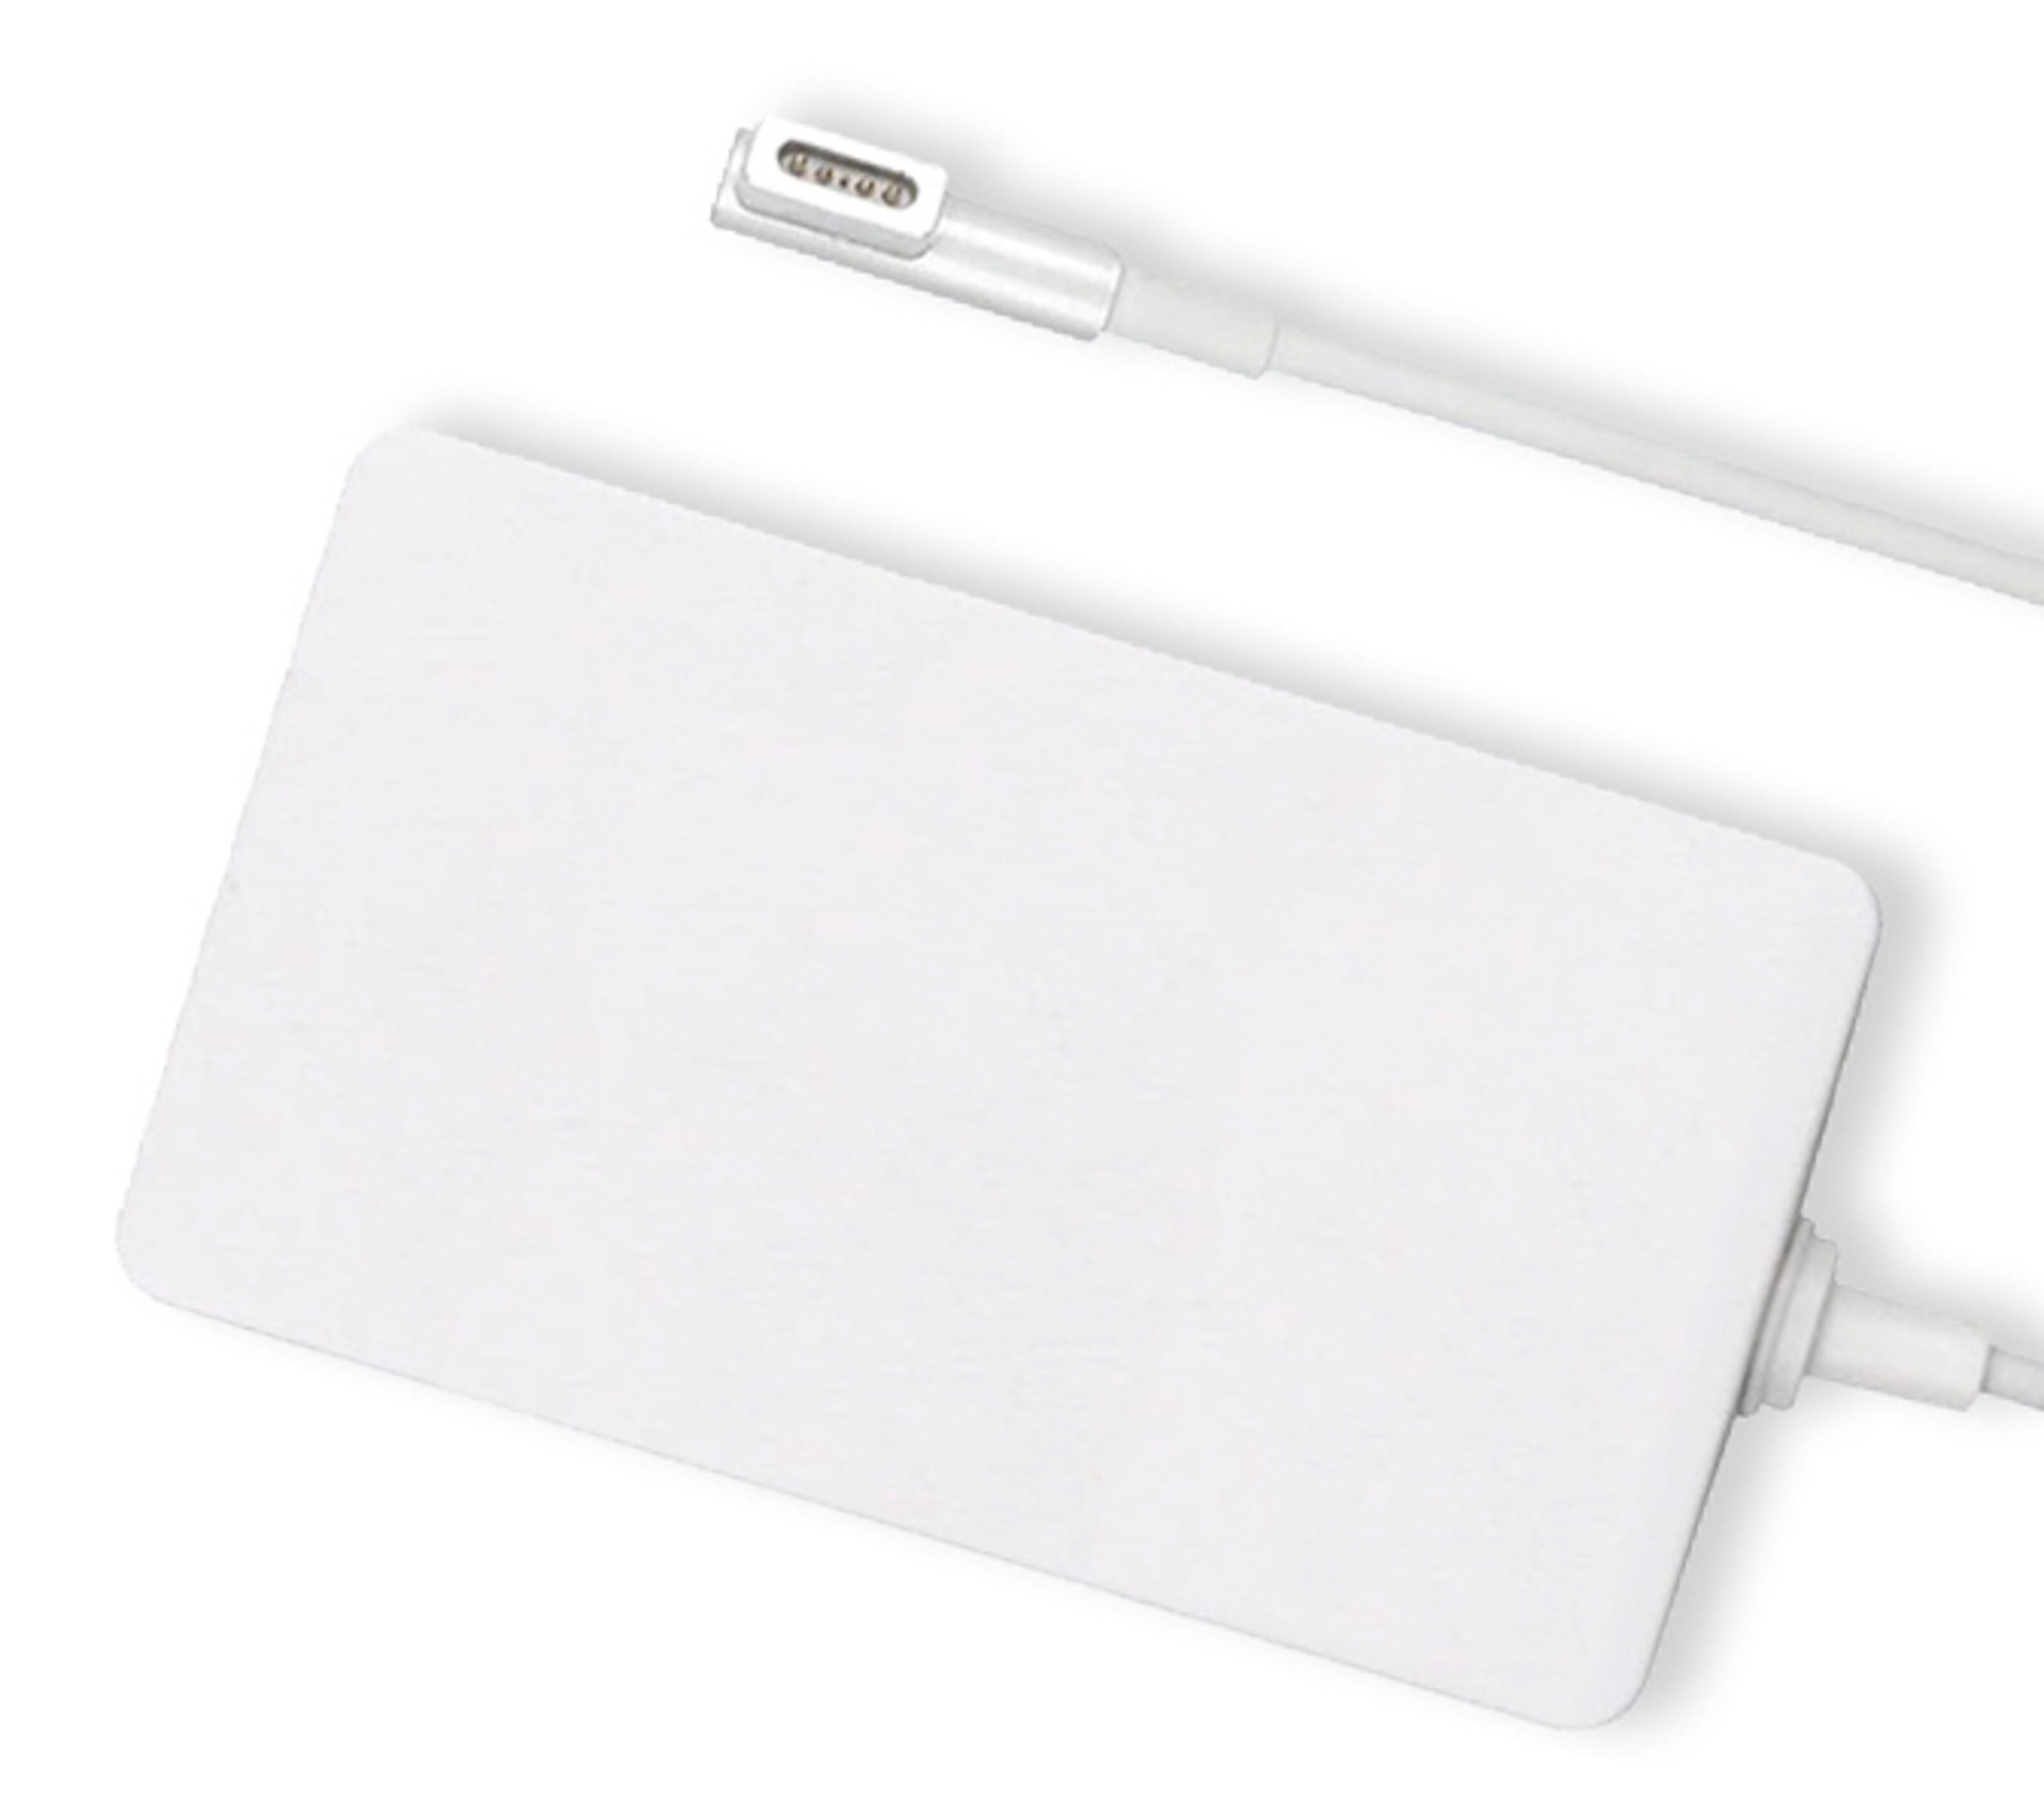 2011 macbook air charger watt